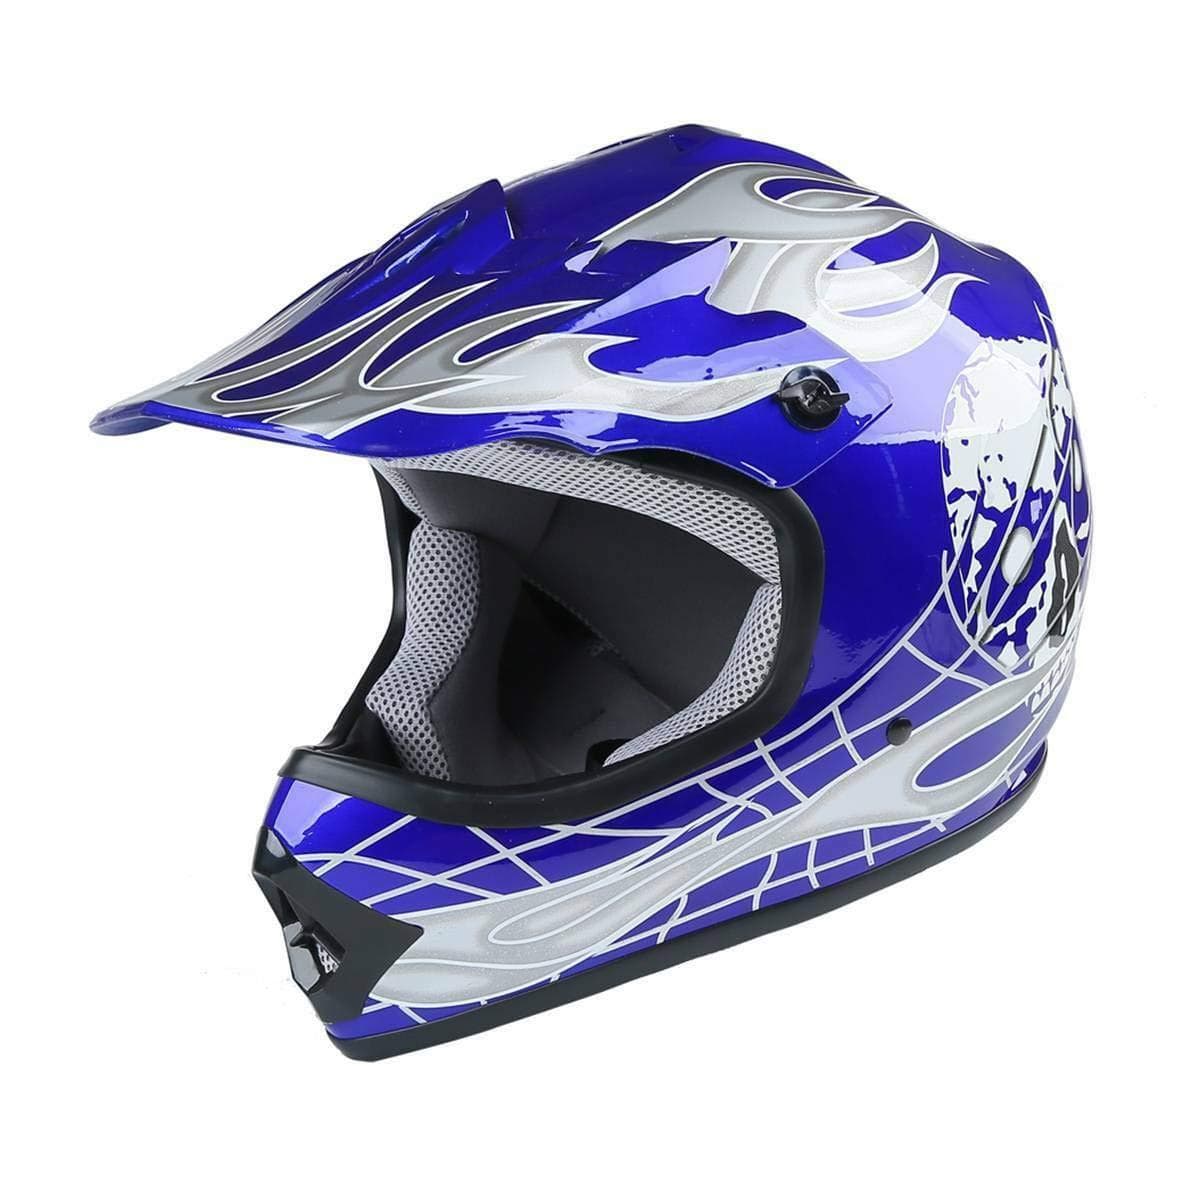 tcmt dot helmet for kids & youth skull with goggles & gloves for atv mx motocross offroad street dirt bike